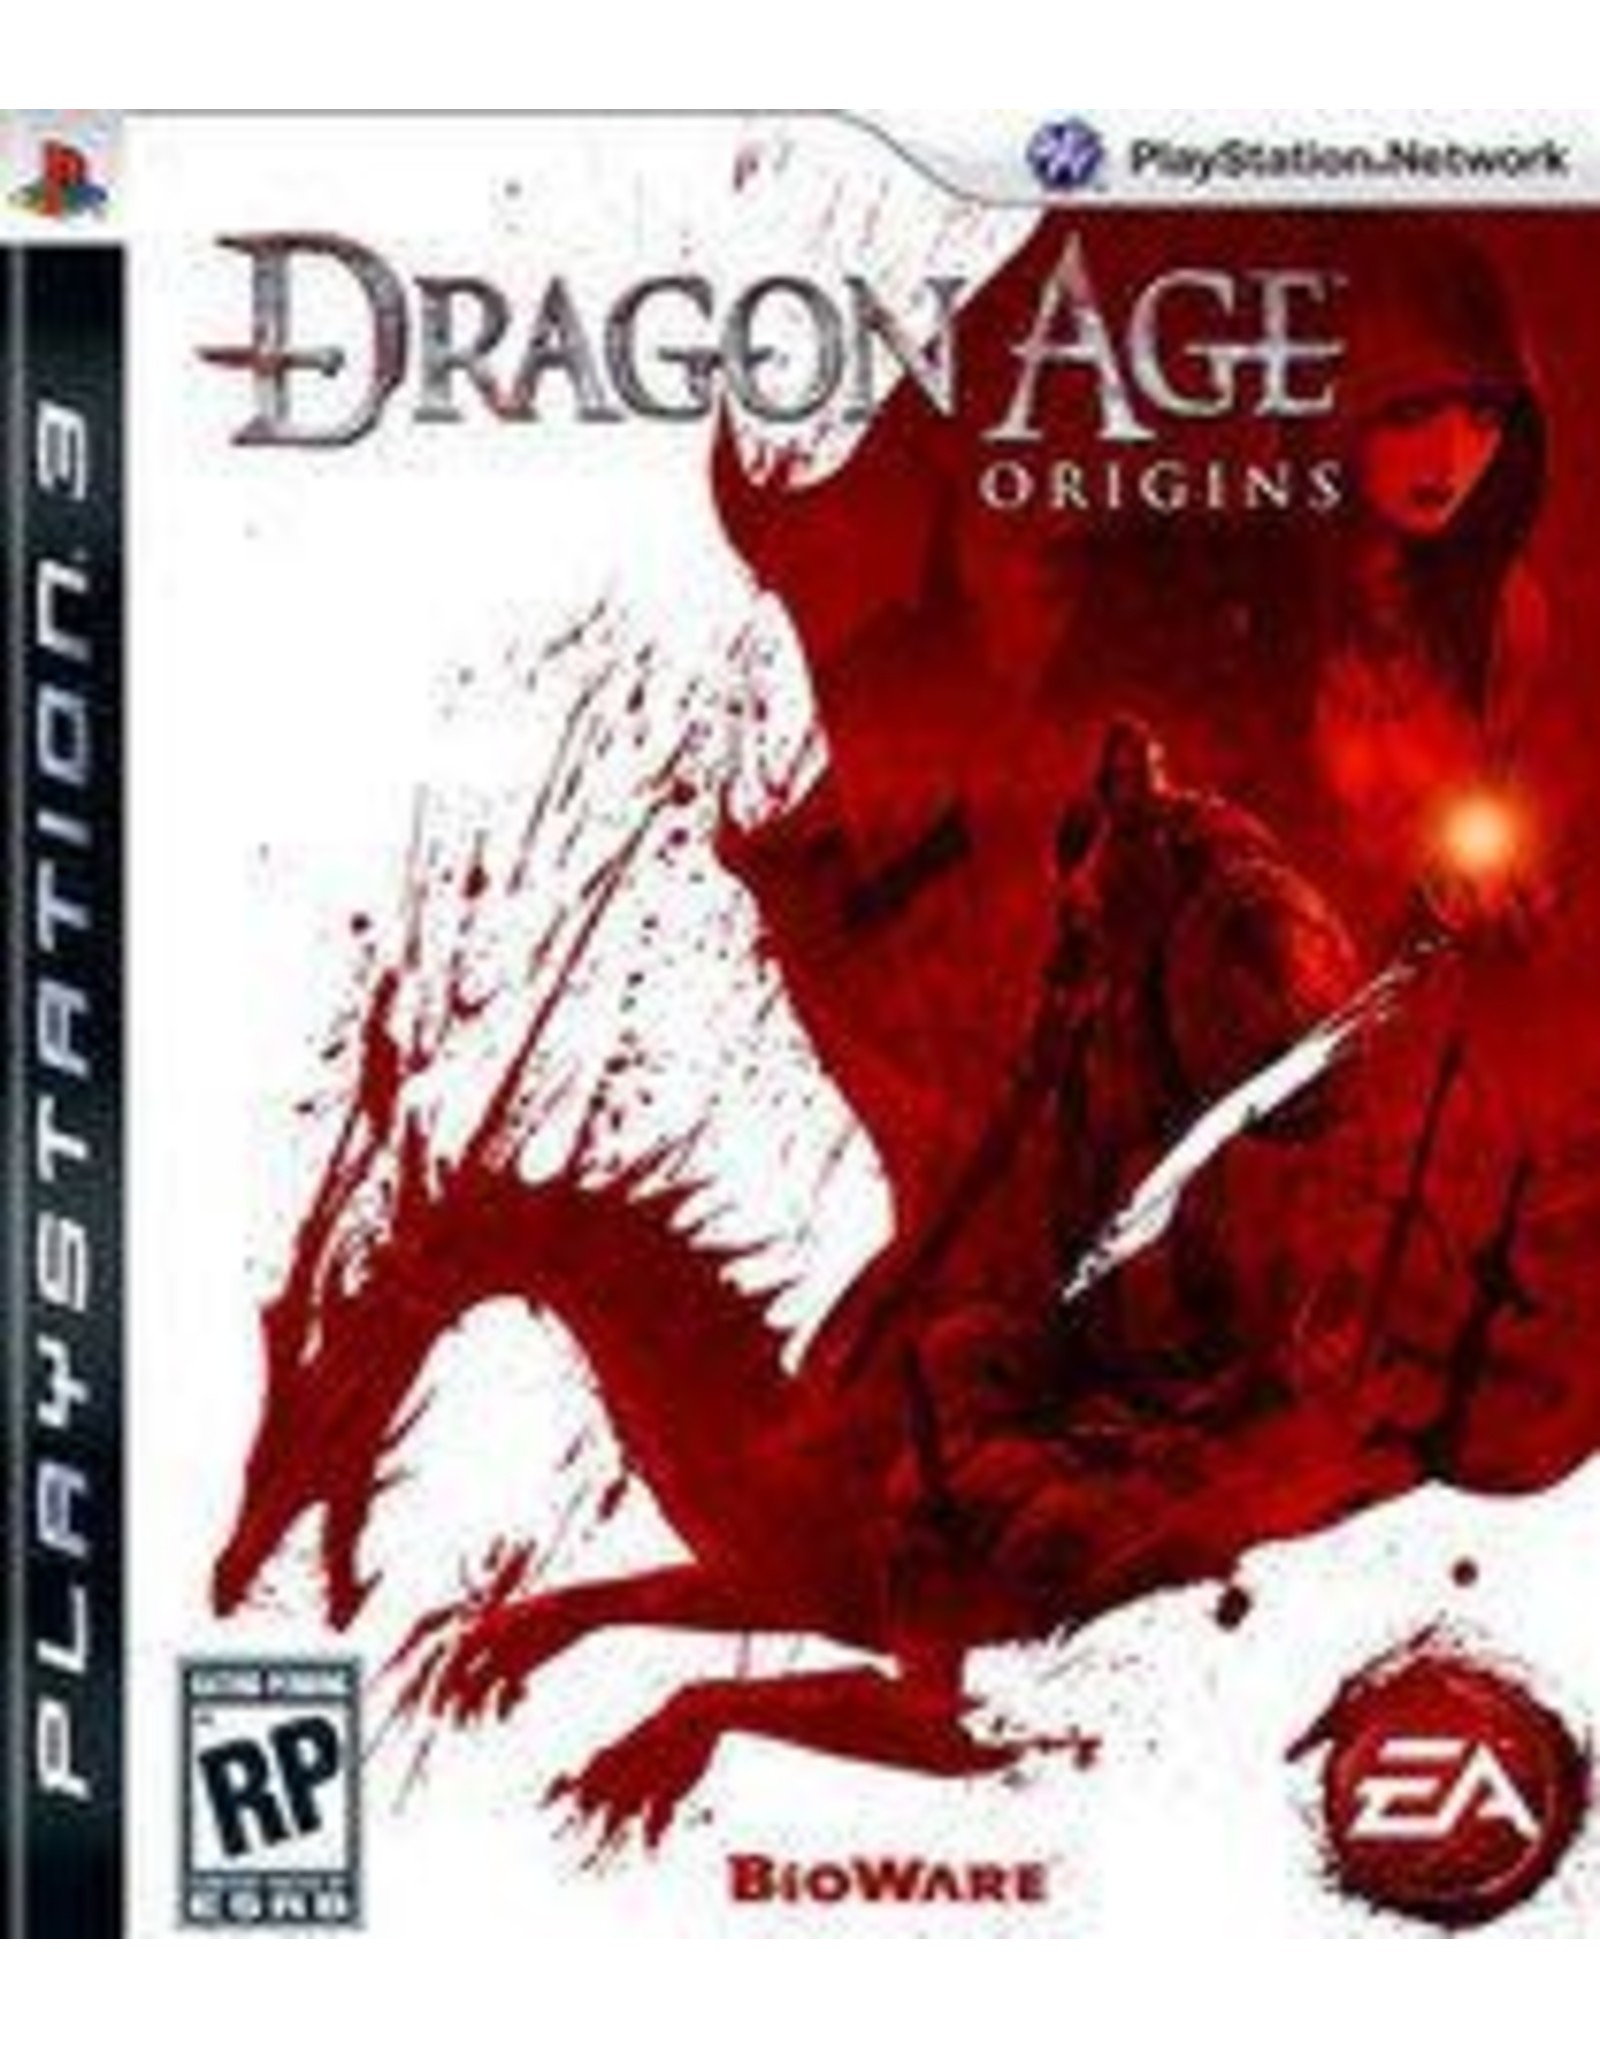 Playstation 3 Dragon Age: Origins (Used)